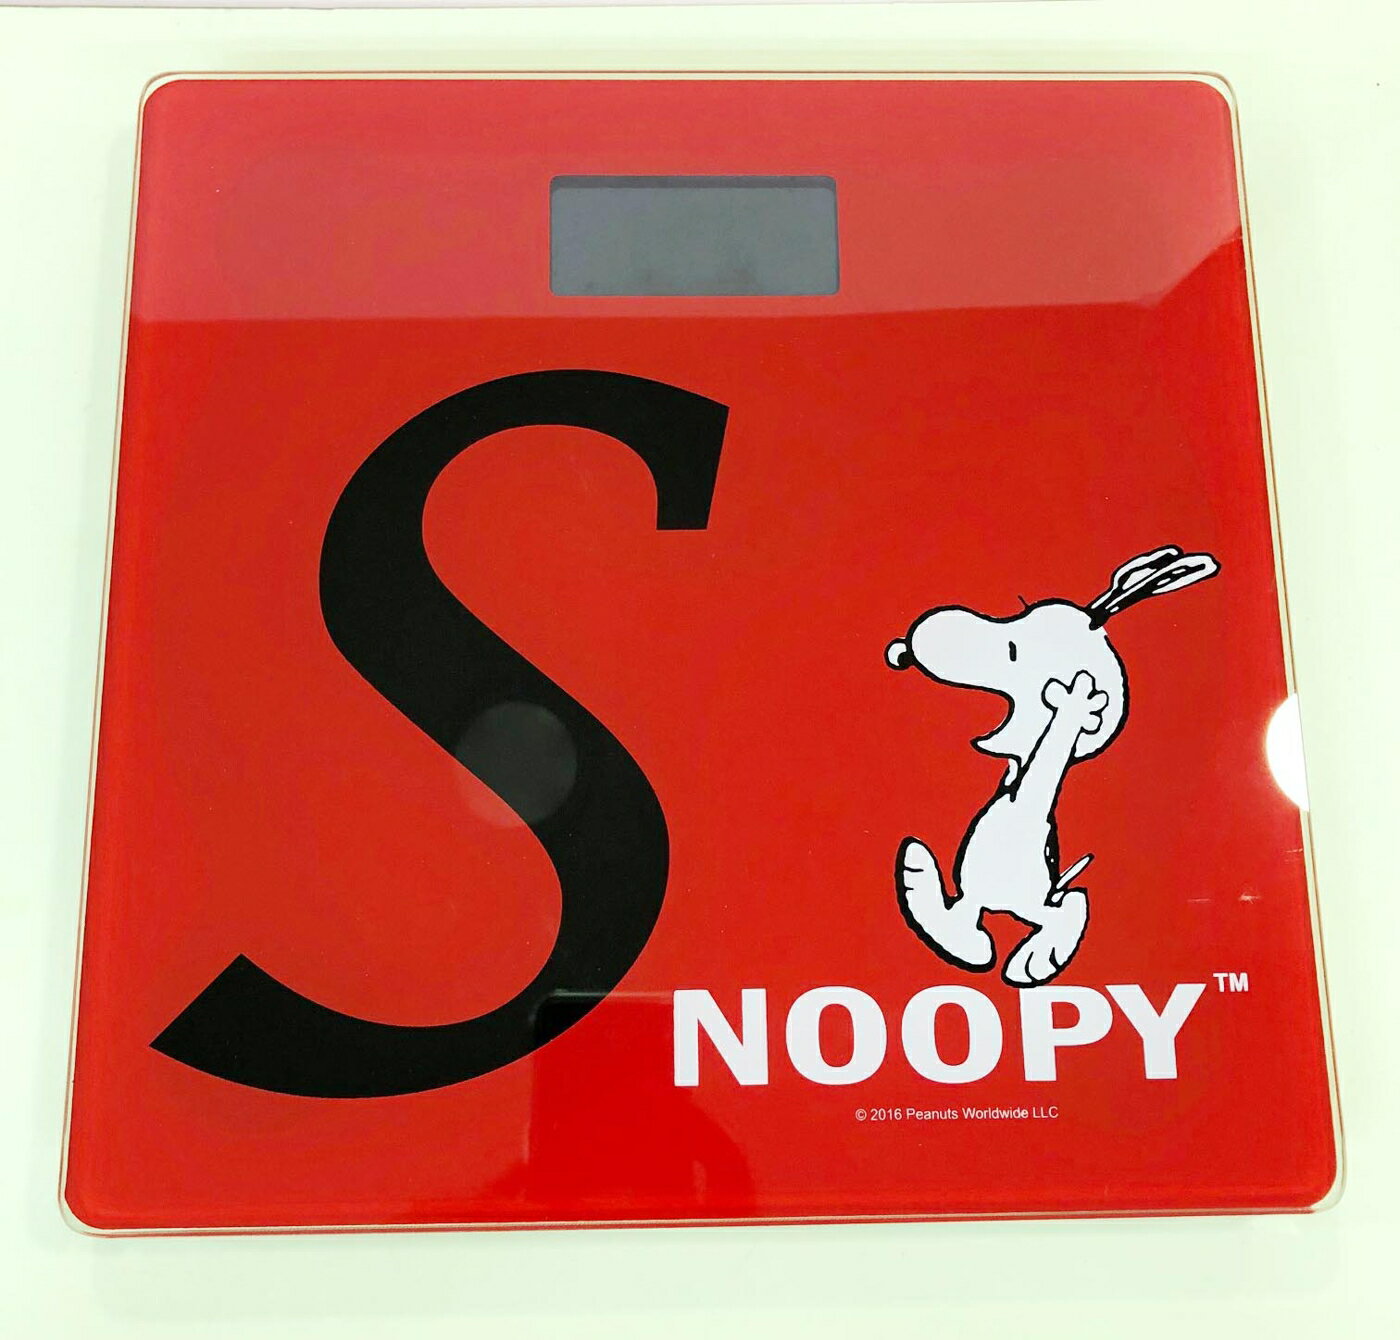 【震撼精品百貨】史奴比Peanuts Snoopy SNOOPY 數位電子體重機-紅#46061 震撼日式精品百貨